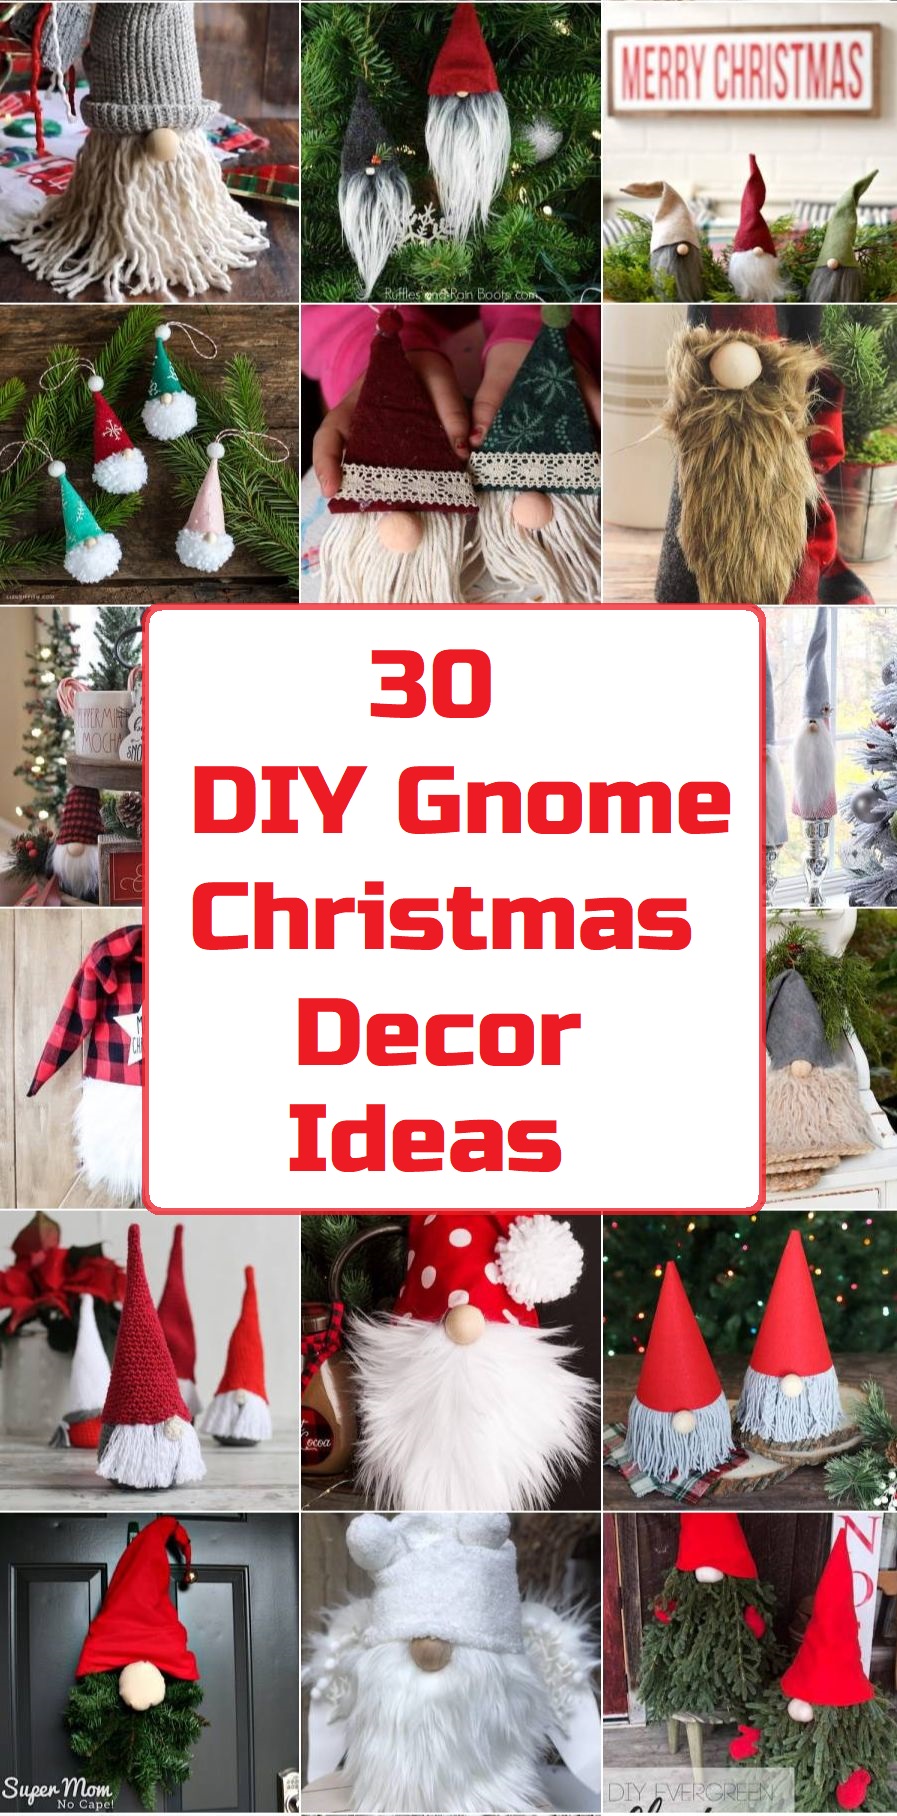 30 DIY Gnome Christmas Decor Ideas | TOPppINFO.com